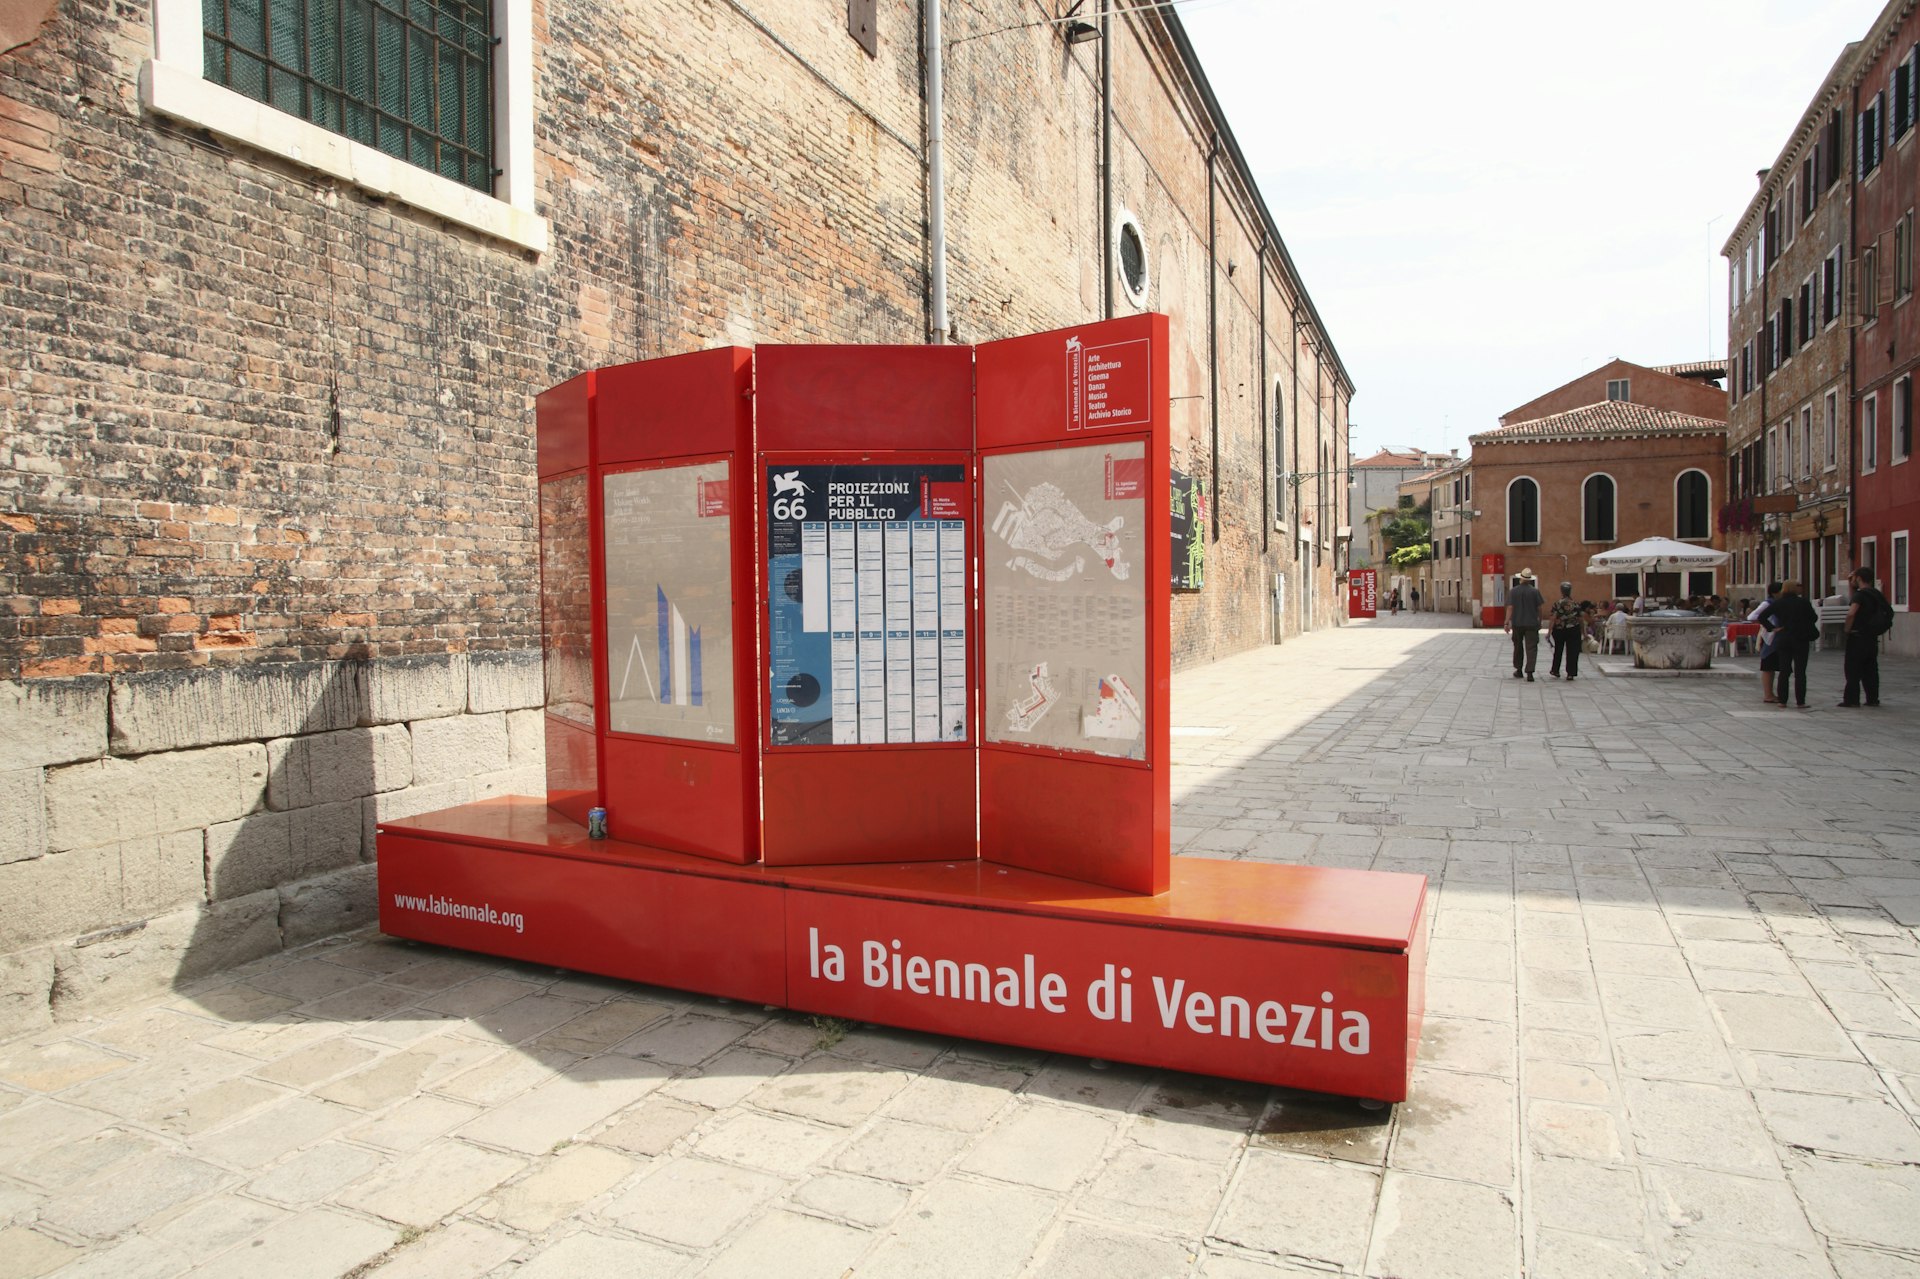 Sign for La Biennale di Venezia (Venice Biennale) in Venice.